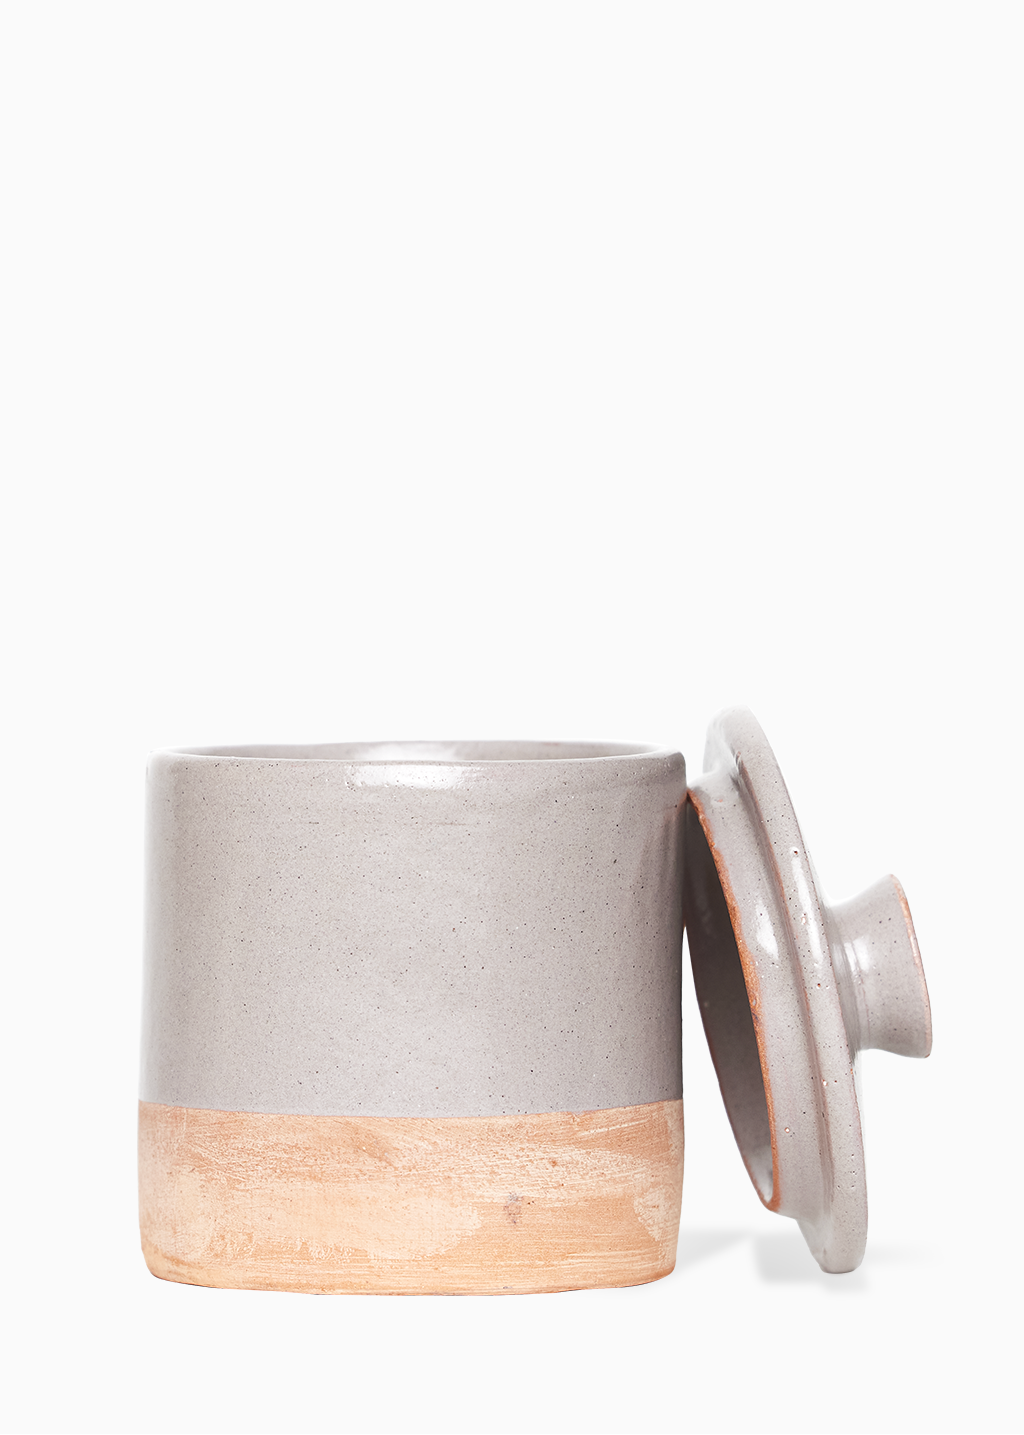 Bougie en poterie 1 mèche - JASMIN + FLEUR DE LUNE